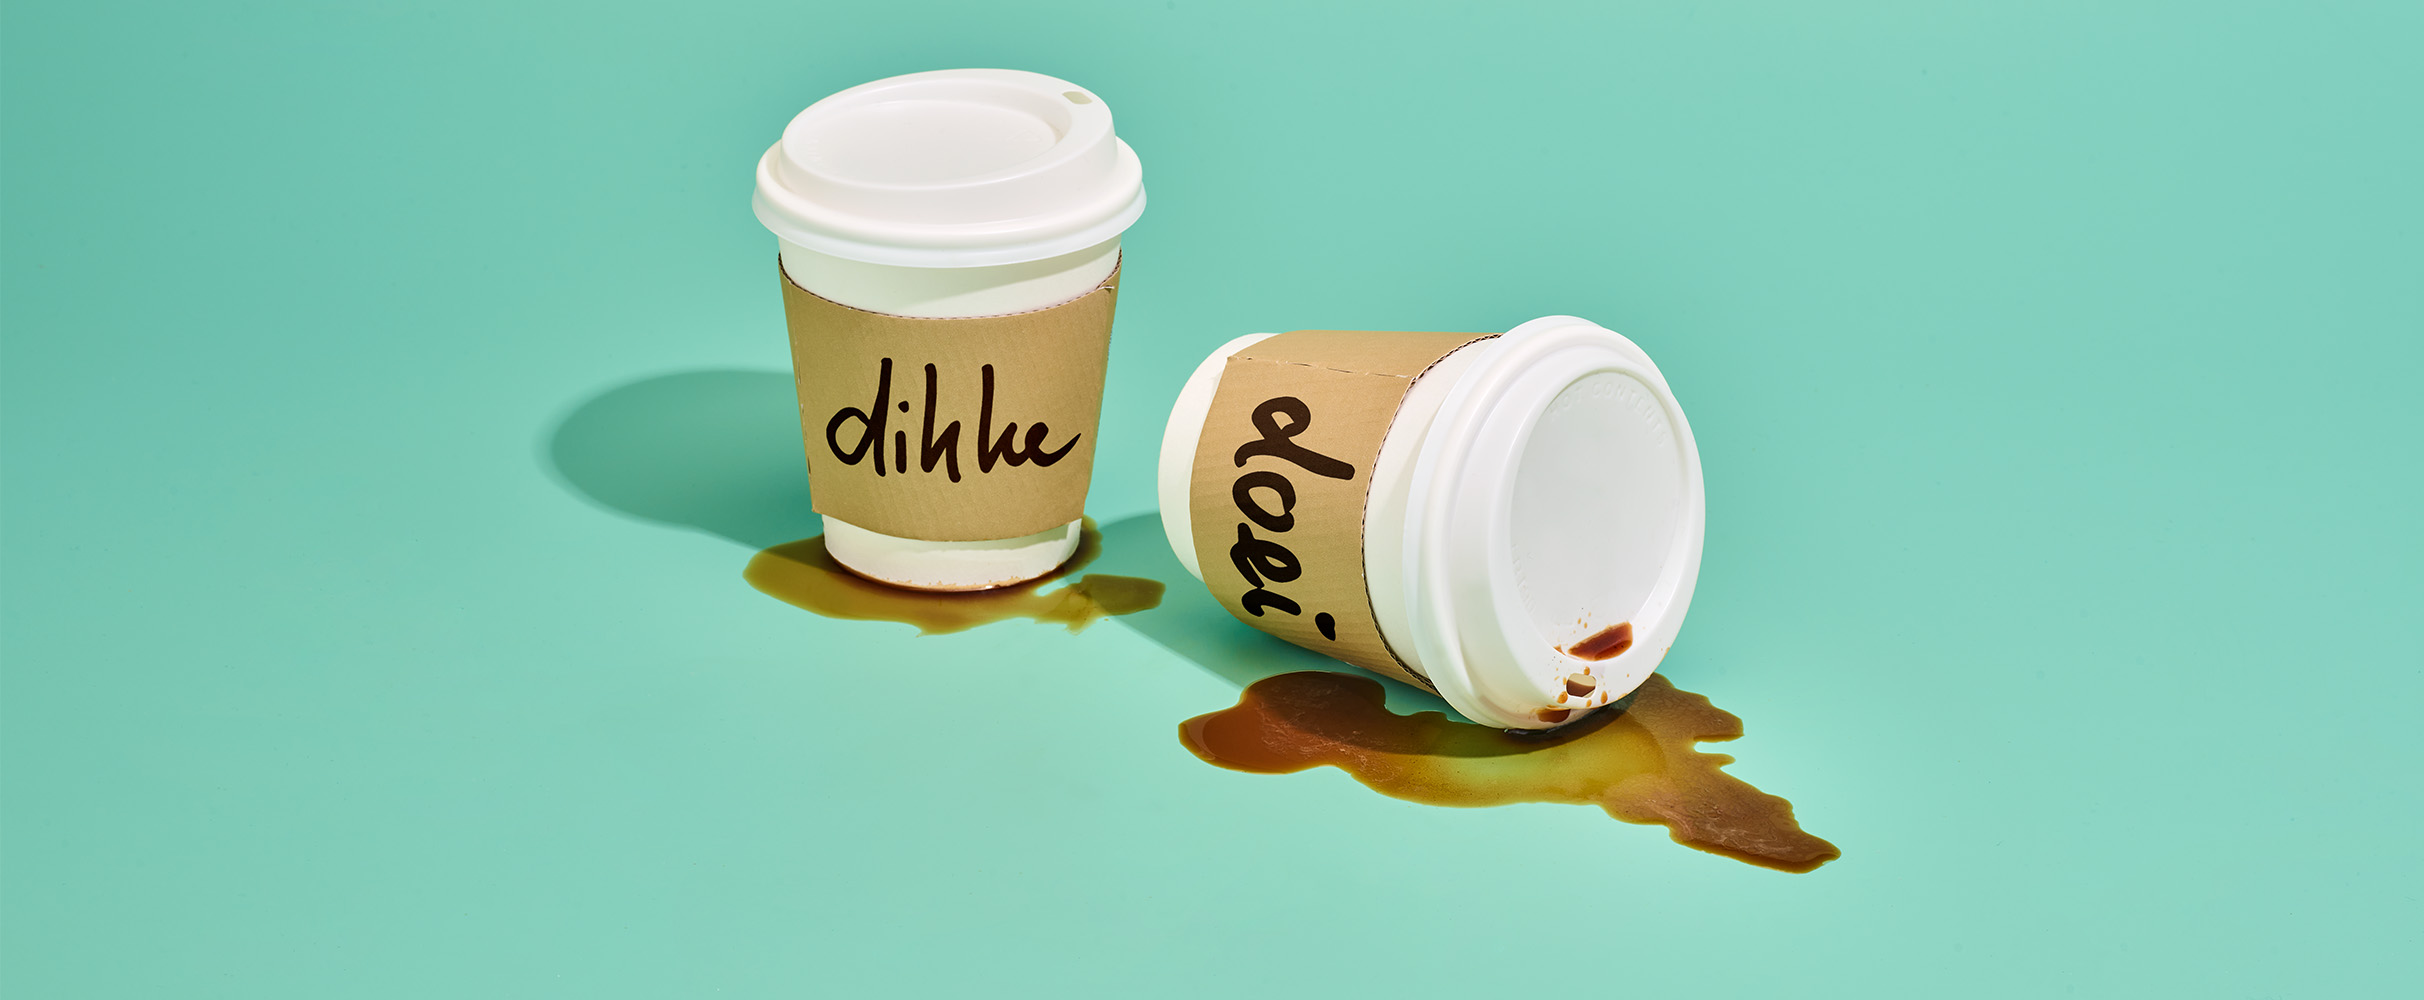 Sorry koffieleuters: dit is waarom je 's ochtends je kopje koffie beter kunt laten staan